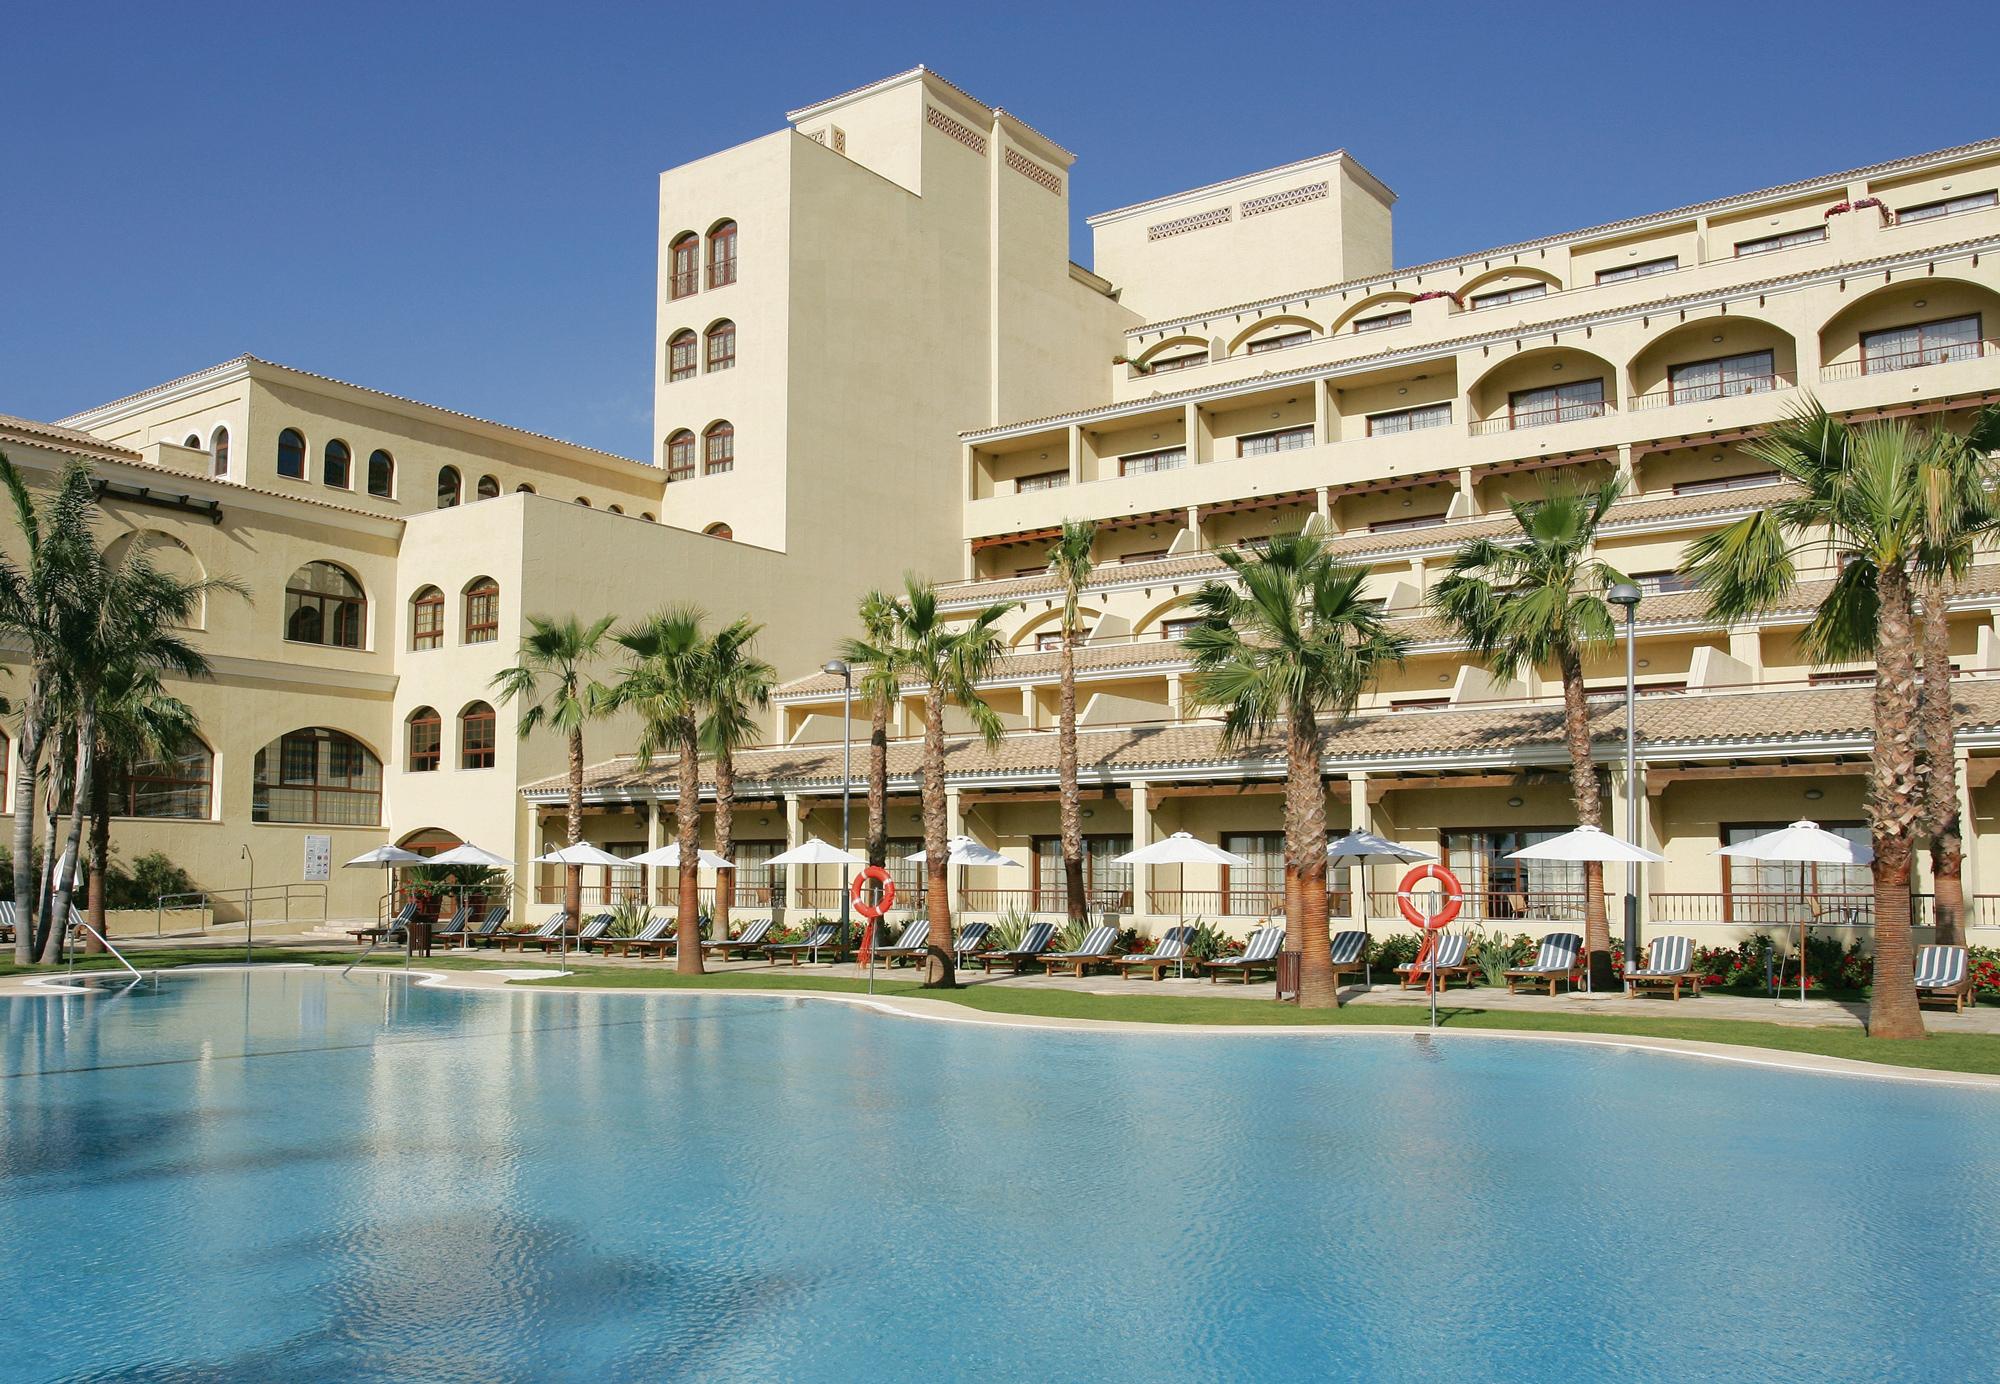 The Vincci Seleccion Envia Almeria's scenic hotel within marvelous Costa Almeria.